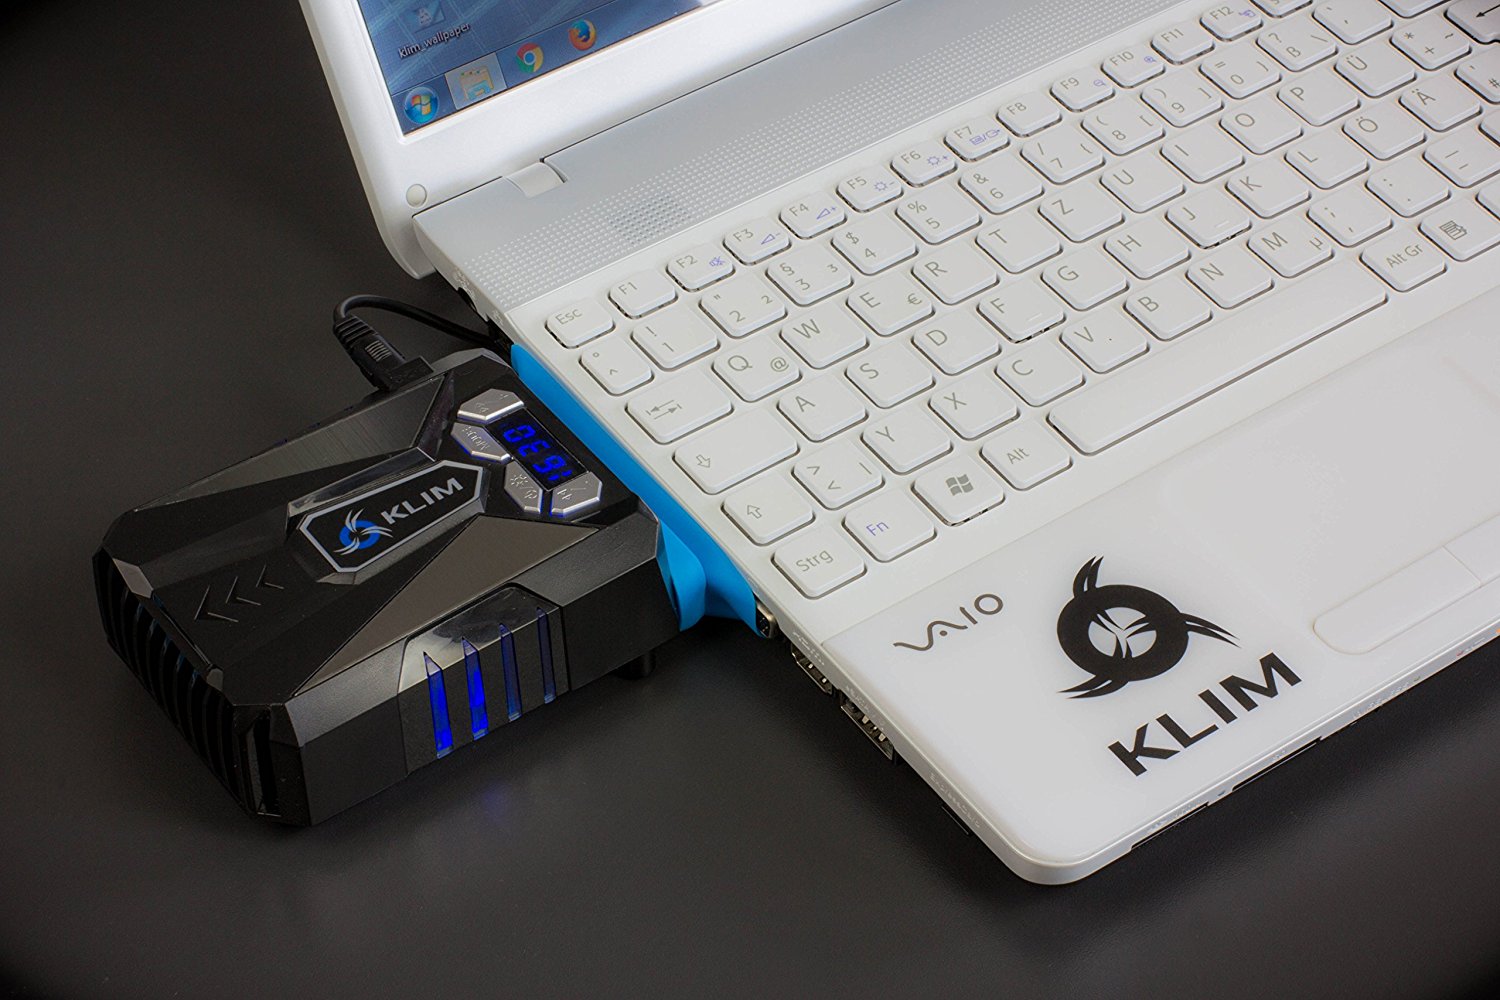 KLIM Cool Refroidisseur PC Portable Gamer - Ventilateur Haute Performance Pour Refroidissement Rapide - Extracteur d'Air Chaud USB Bleu clicktofournisseur.com